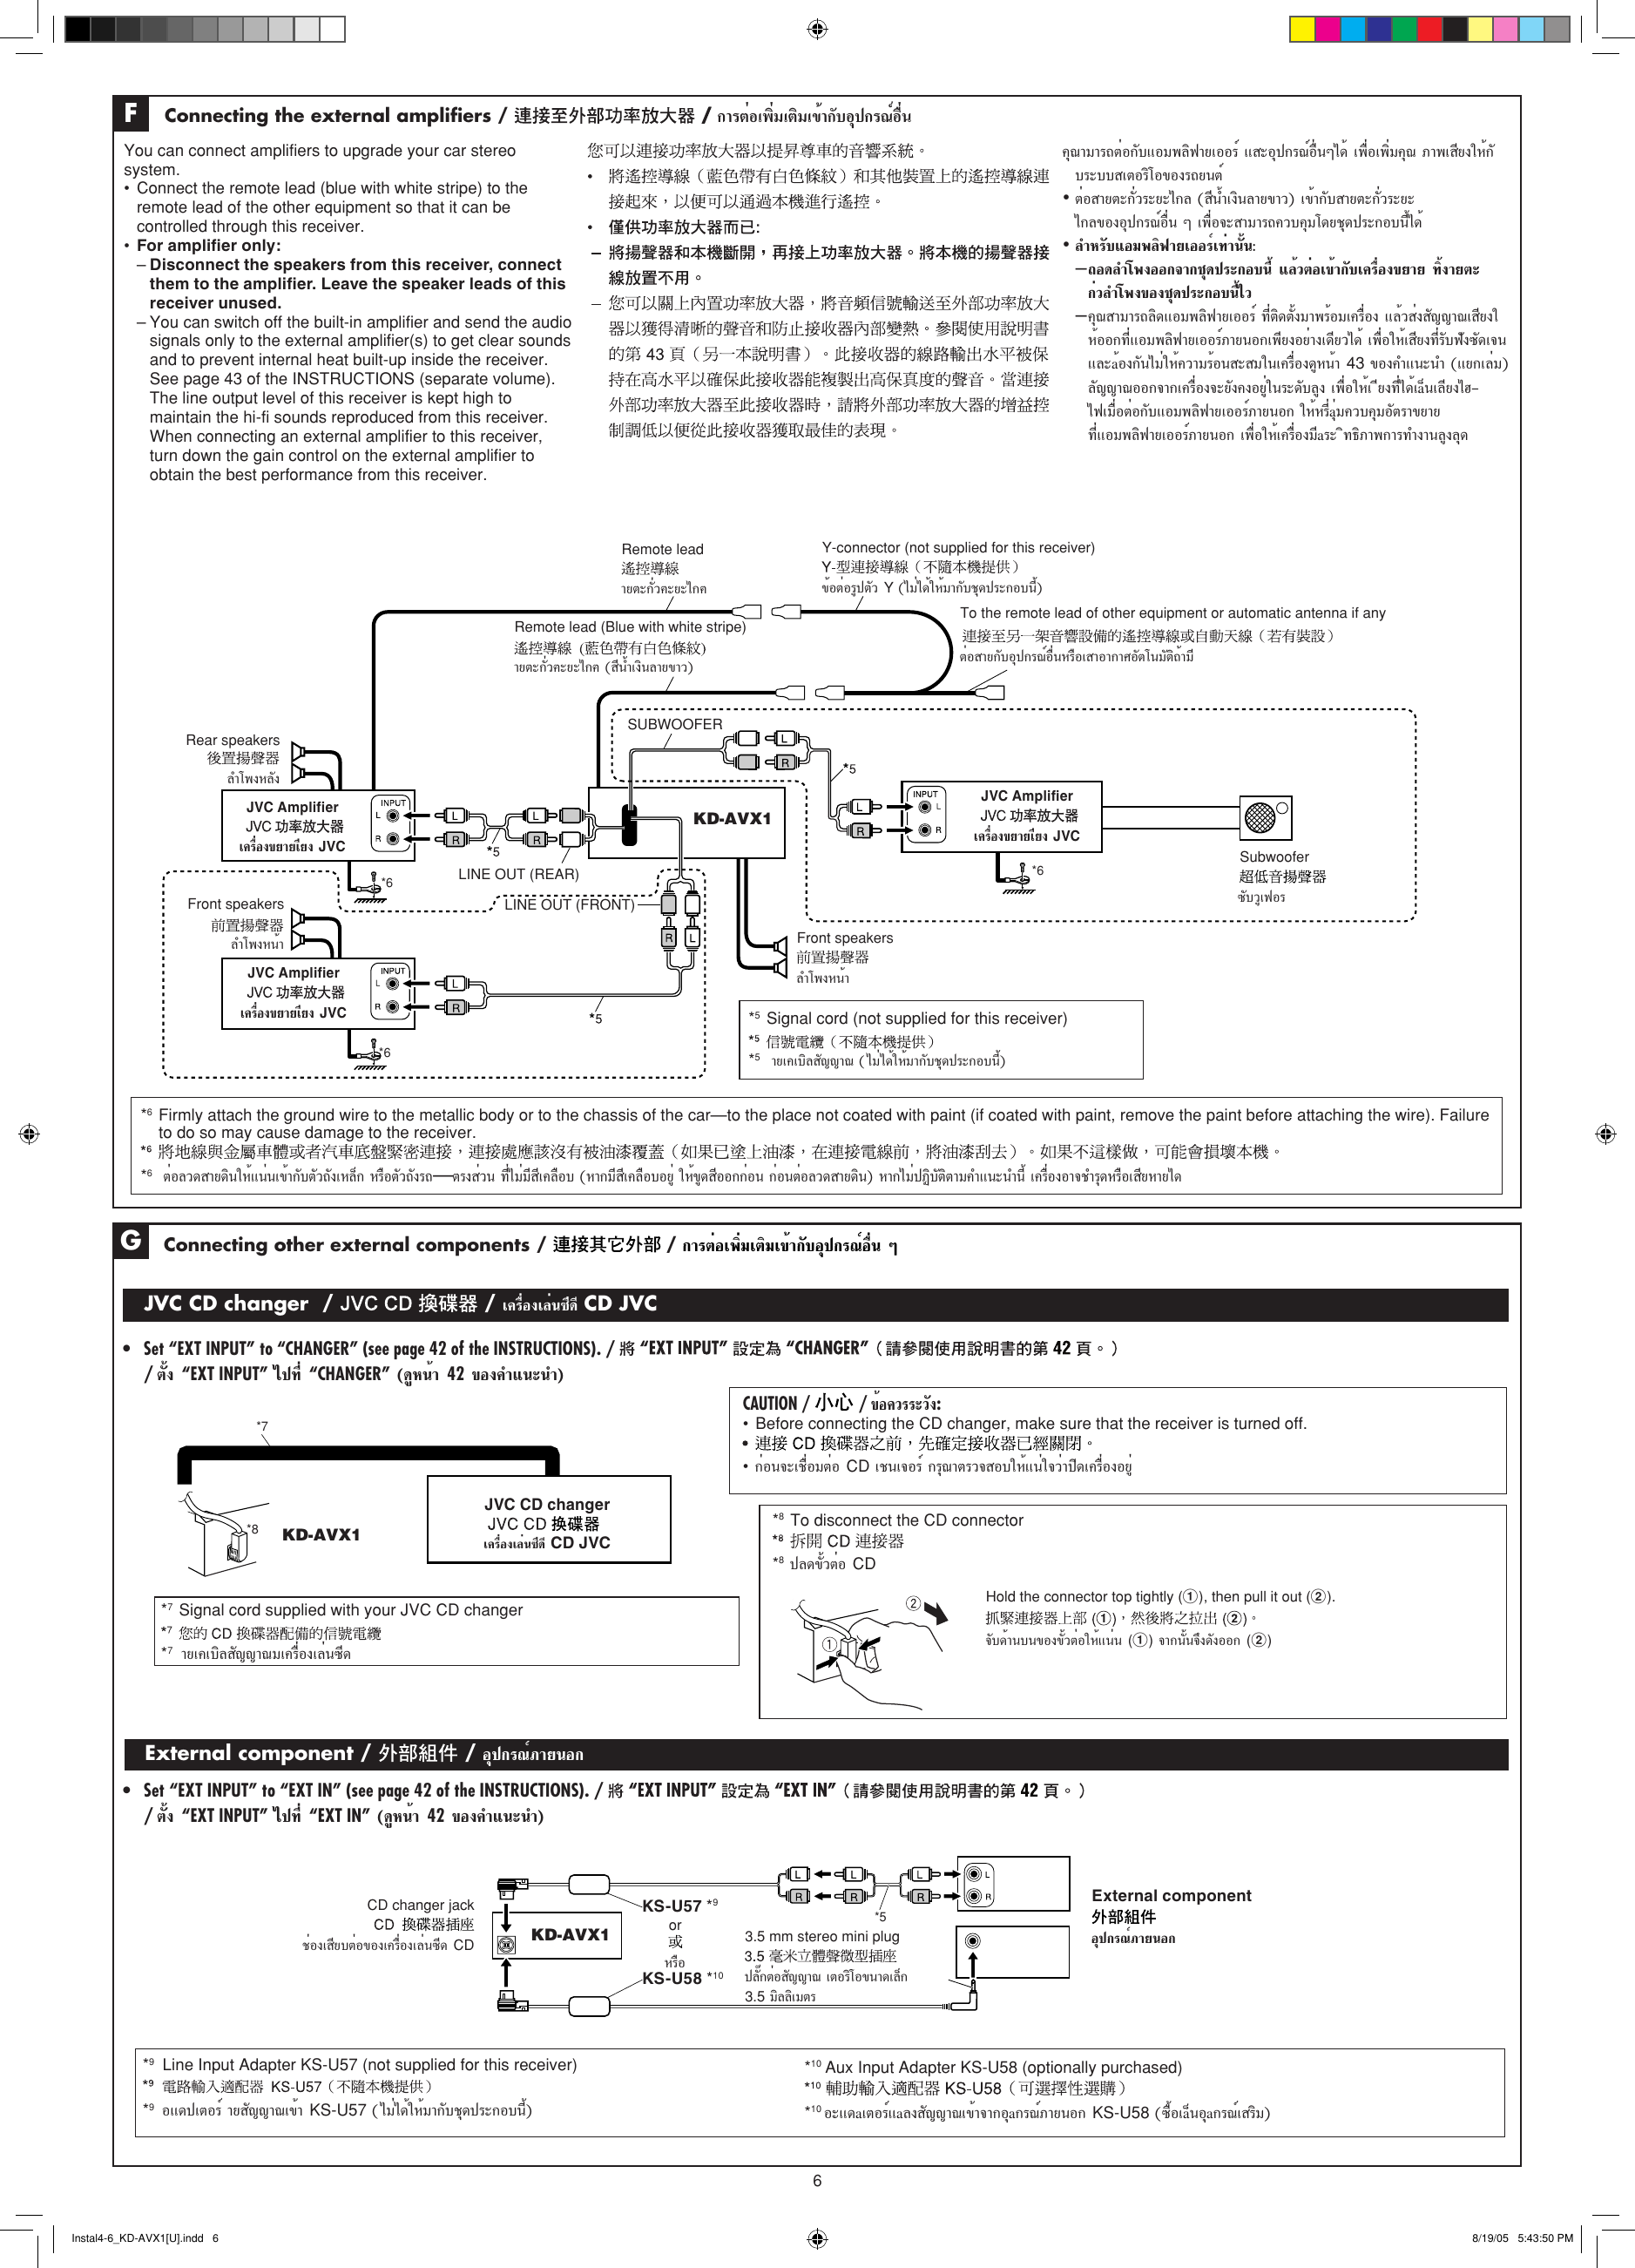 Page 6 of 6 - JVC KD-AVX1A/U/UT Instal1-3_KD-AVX1[U] User Manual LVT1324-005A